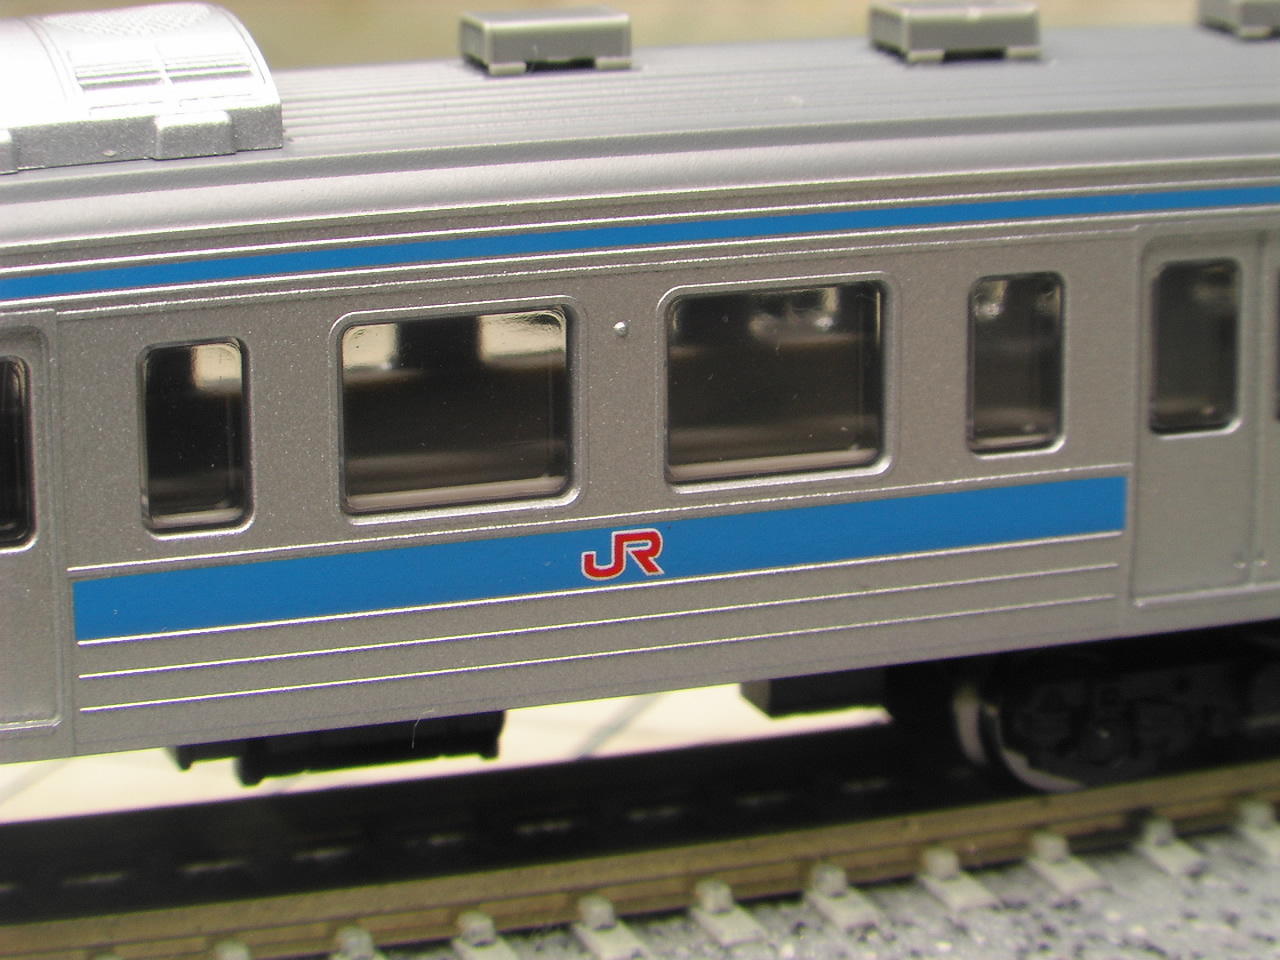 JR415系1500番台近郊電車(九州カラー)92050 | kensysgas.com